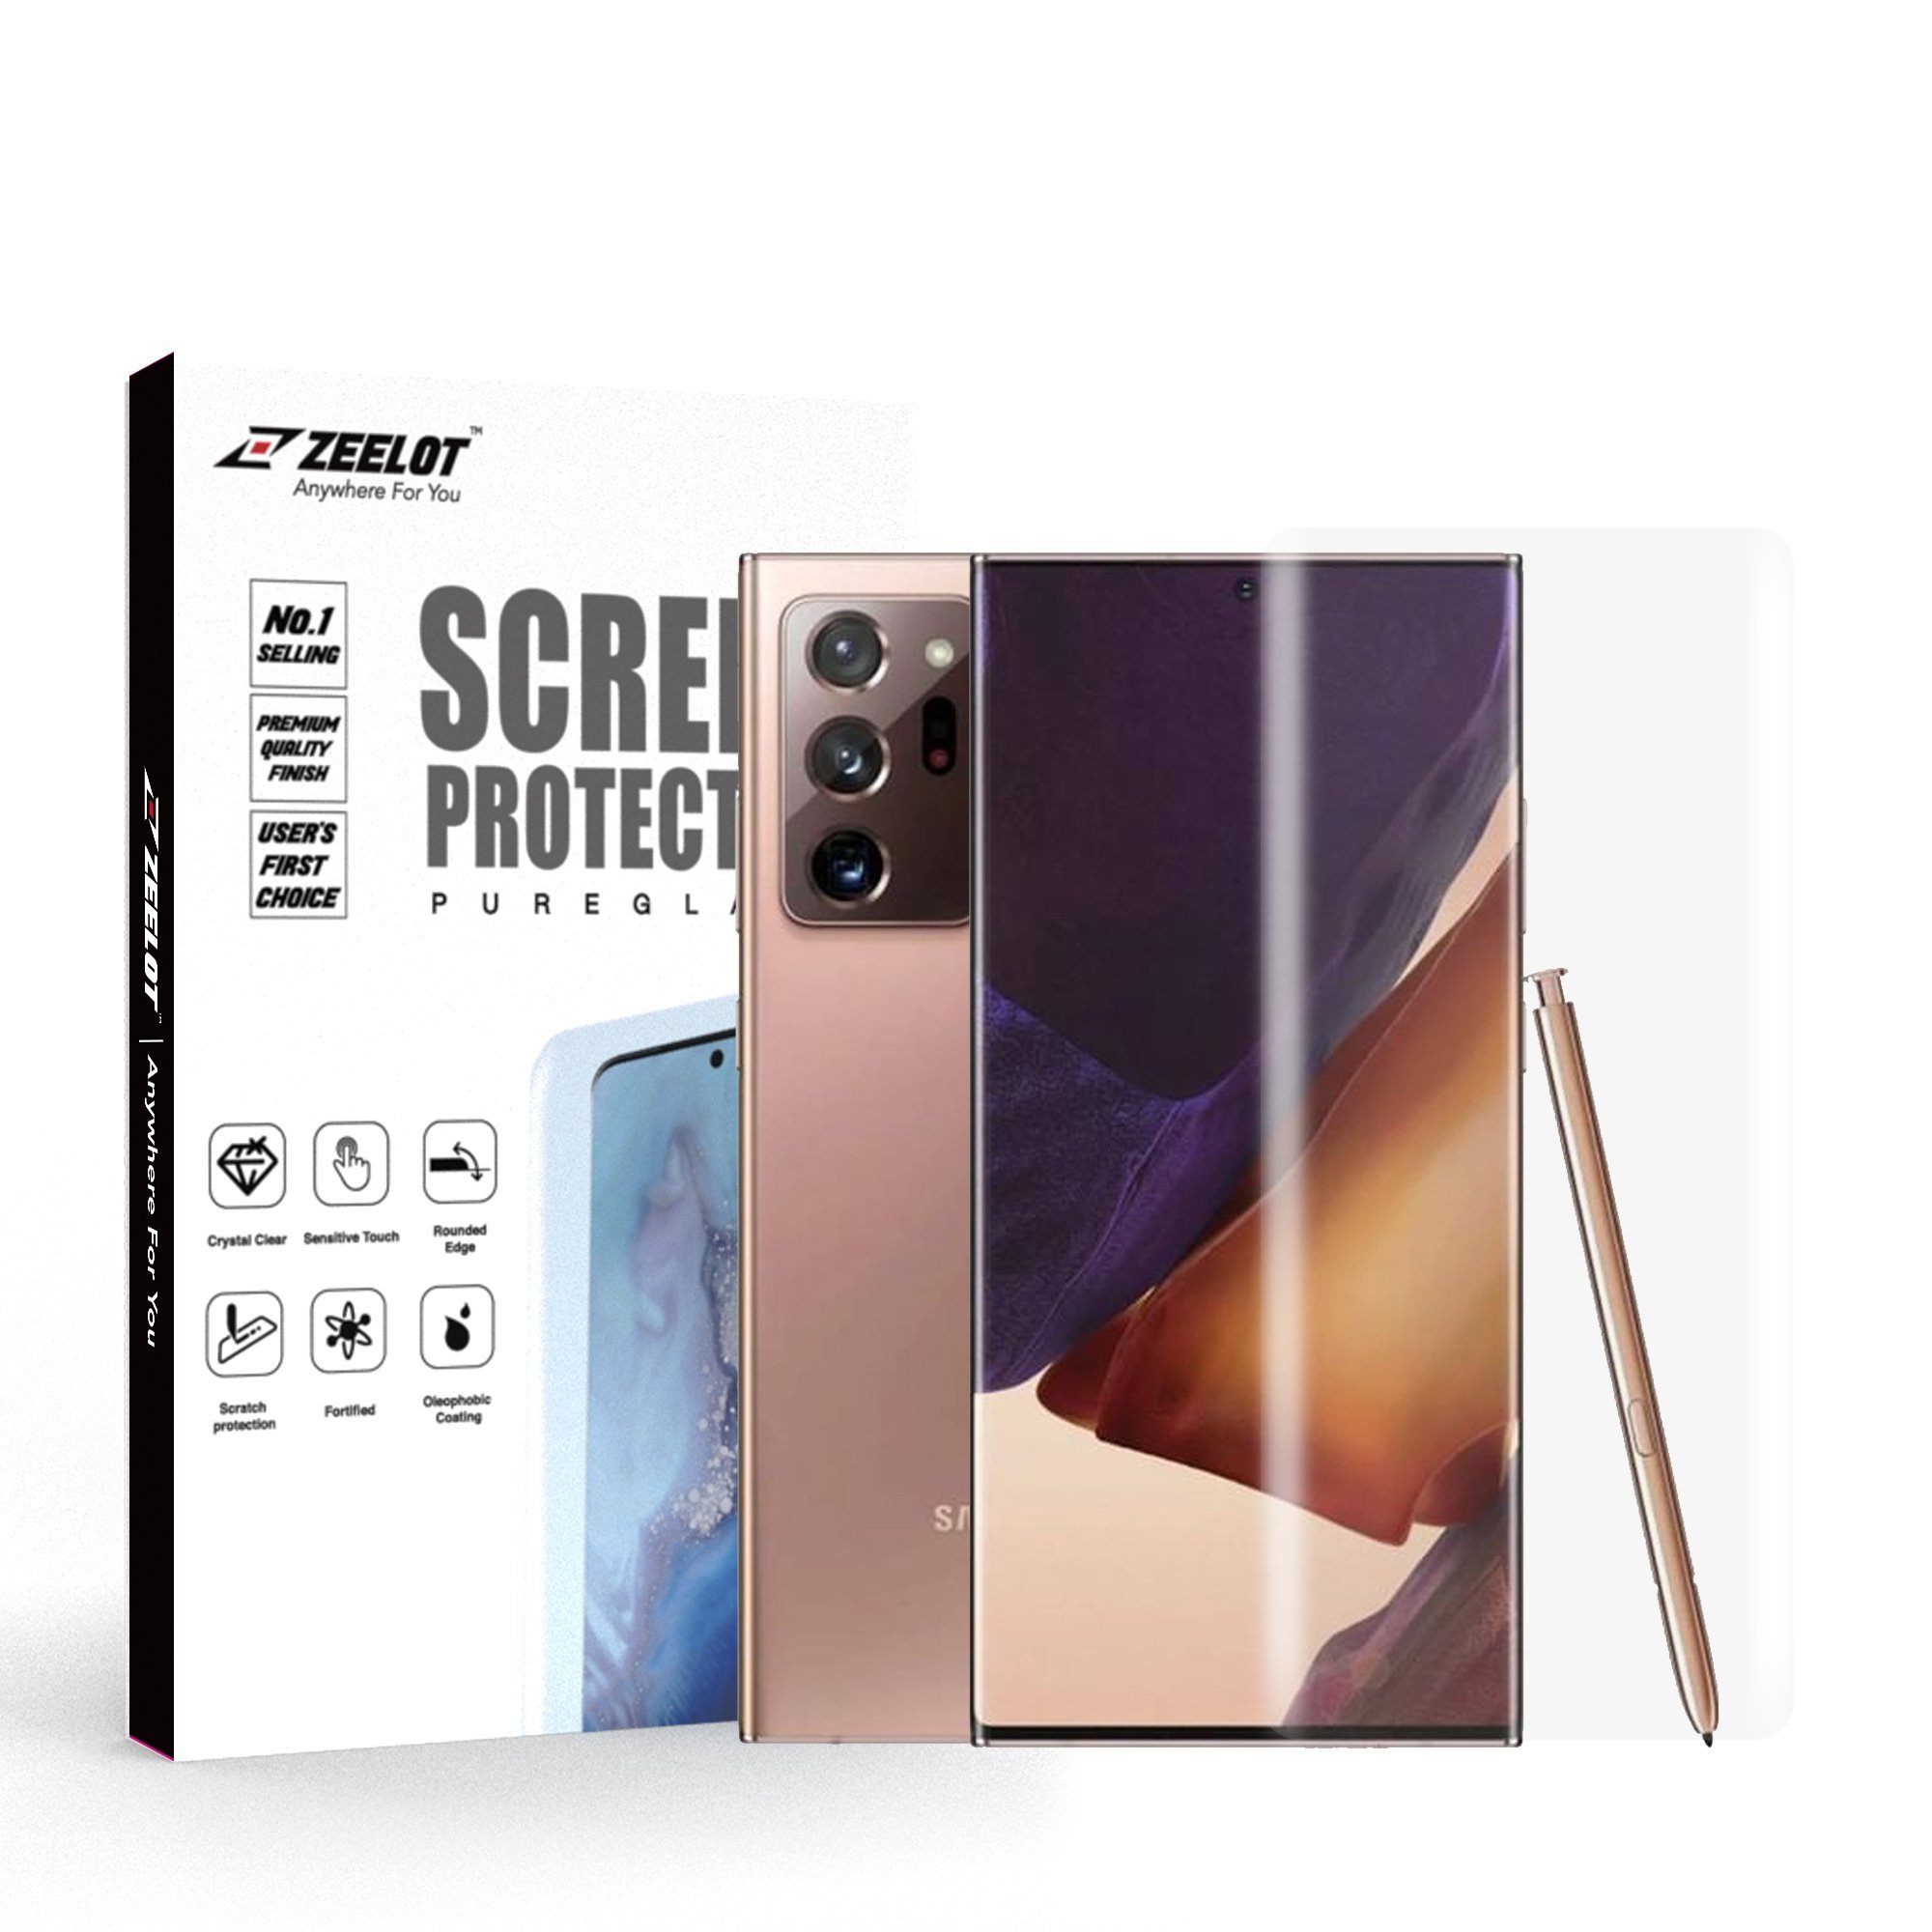 ZEELOT PureGlass 3D LOCA Tempered Glass Screen Protector for Samsung Galaxy Note 20 Ultra, Matte Note 20 Ultra ZEELOT 